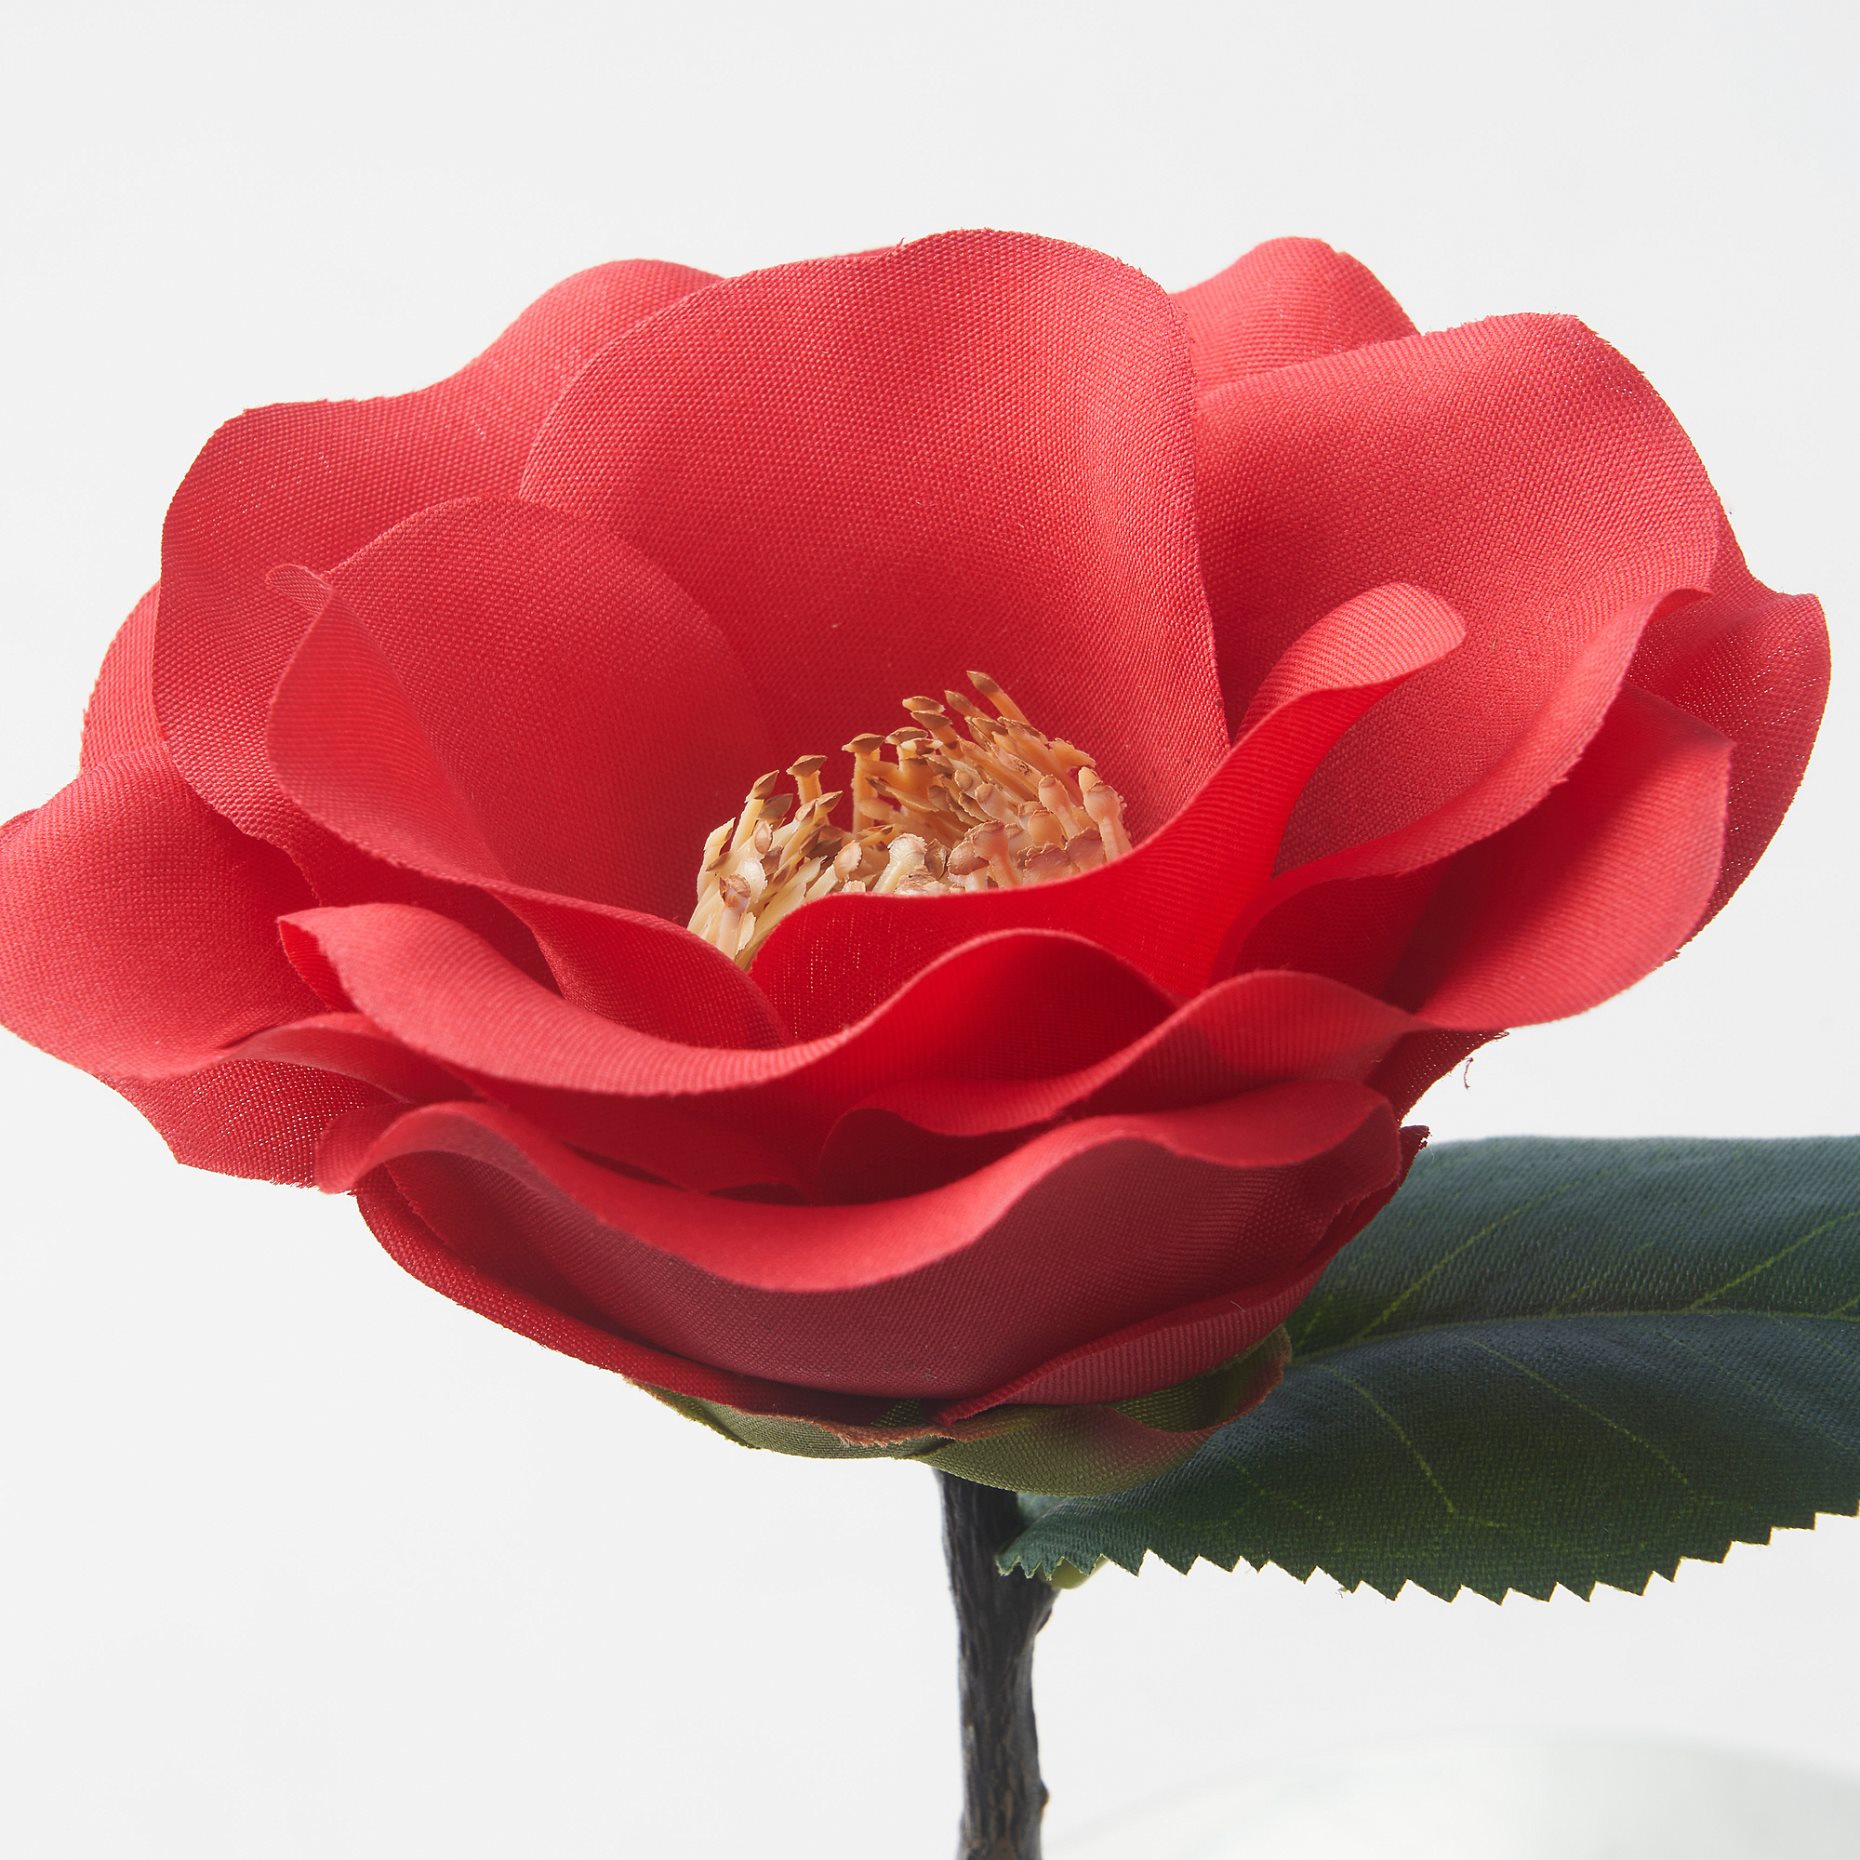 SMYCKA, artificial flower/in/outdoor/Camellia, 28 cm, 505.717.90